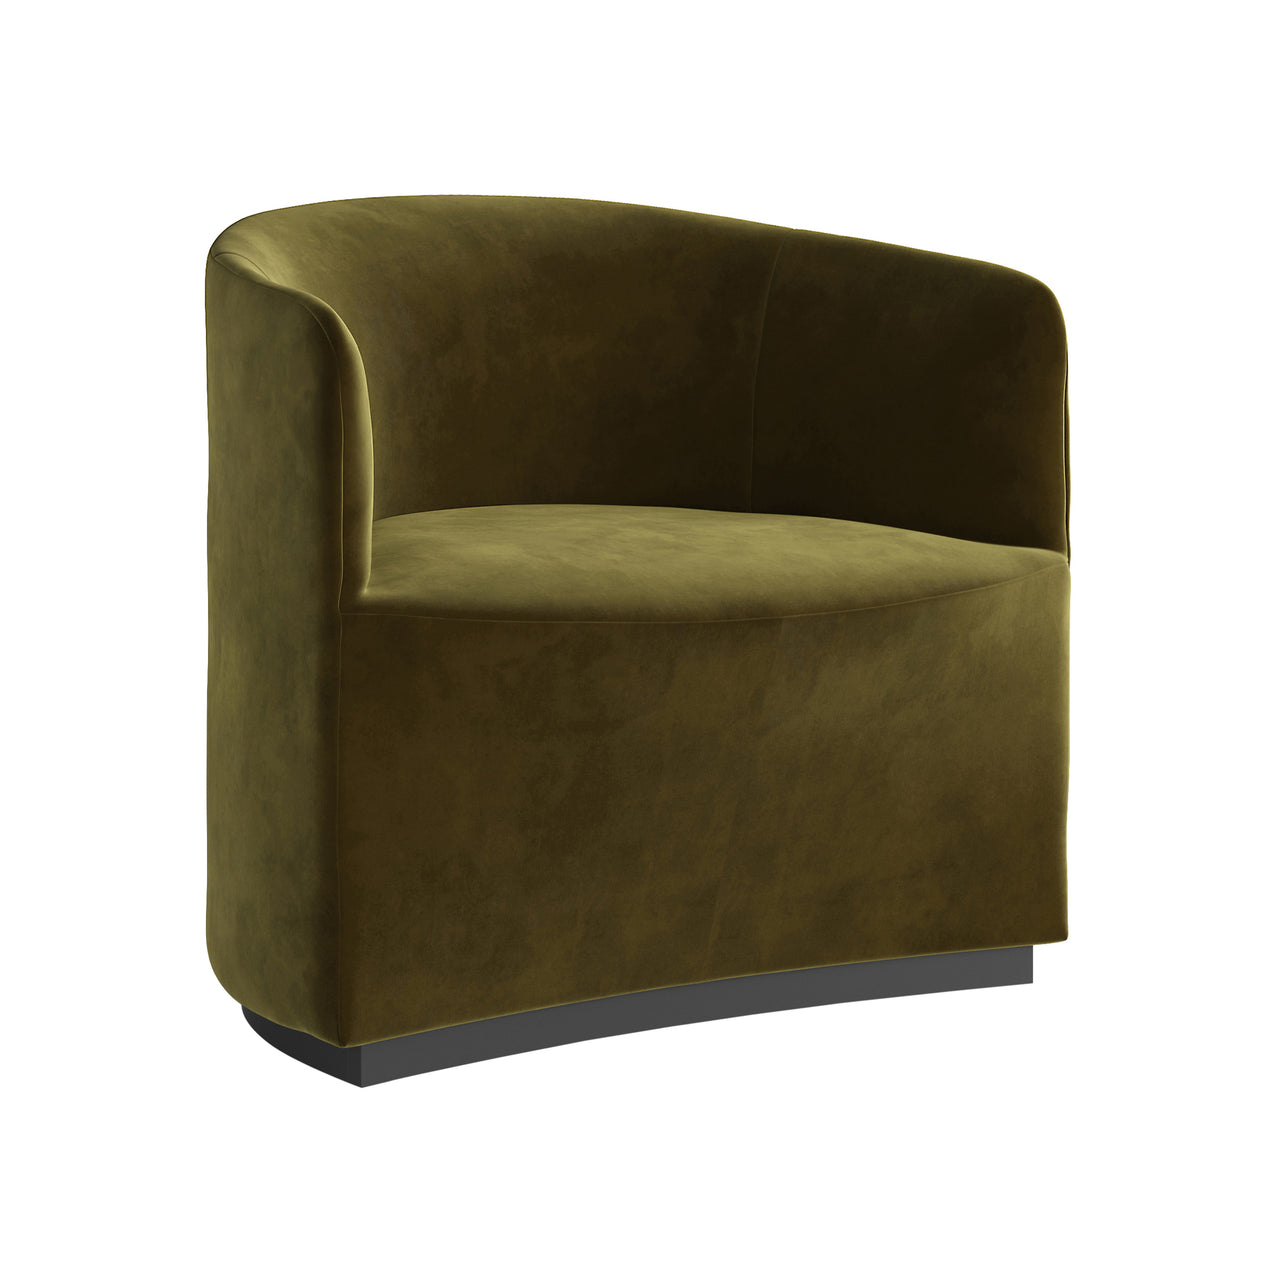 Tearoom Lounge Chair: City Velvet 031